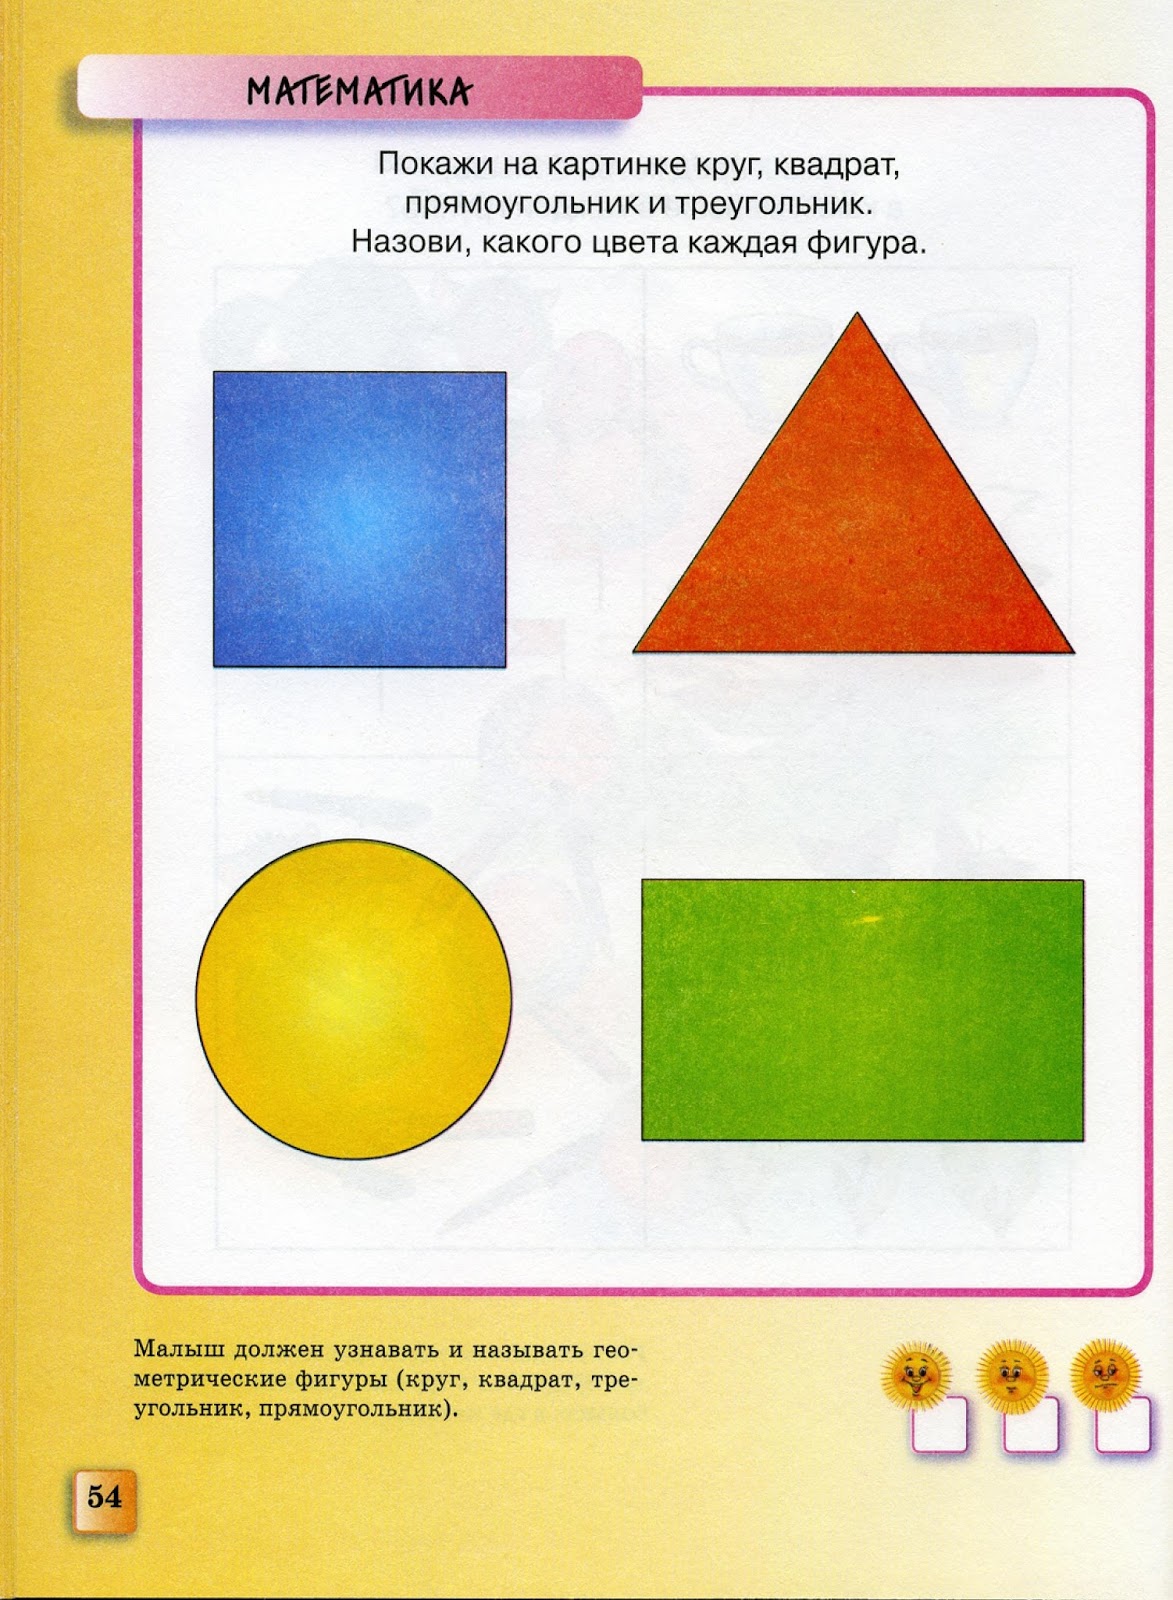 Фигуры для детей круг прямоугольник треугольник квадрат